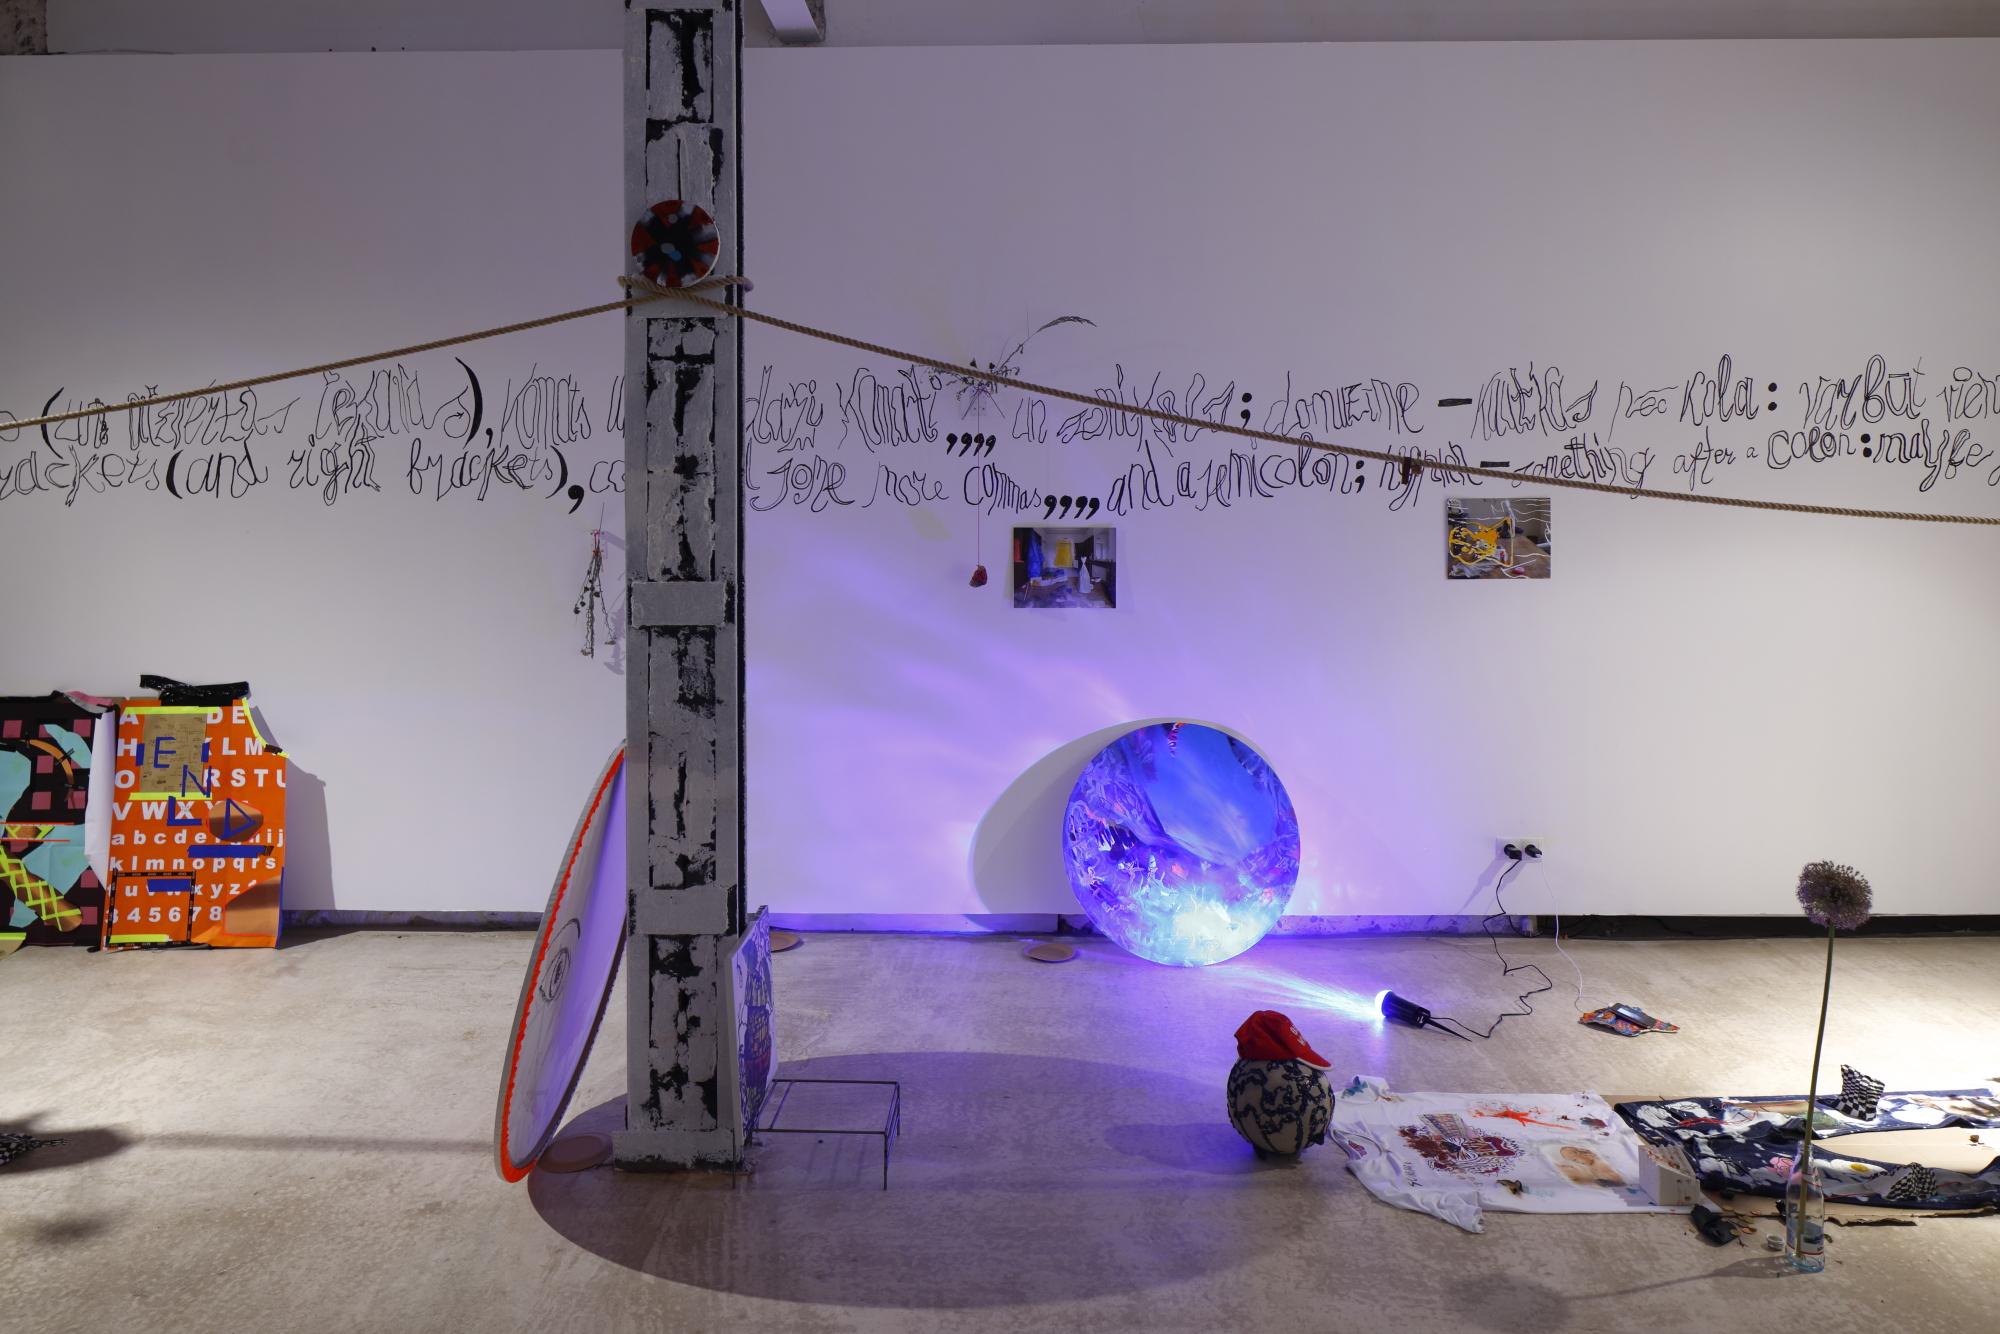  Bora Akinciturk, Jaakko Pallasvuo, “Inhumana”, 2019, rope, textiles, found objects, ear plugs, flowers 